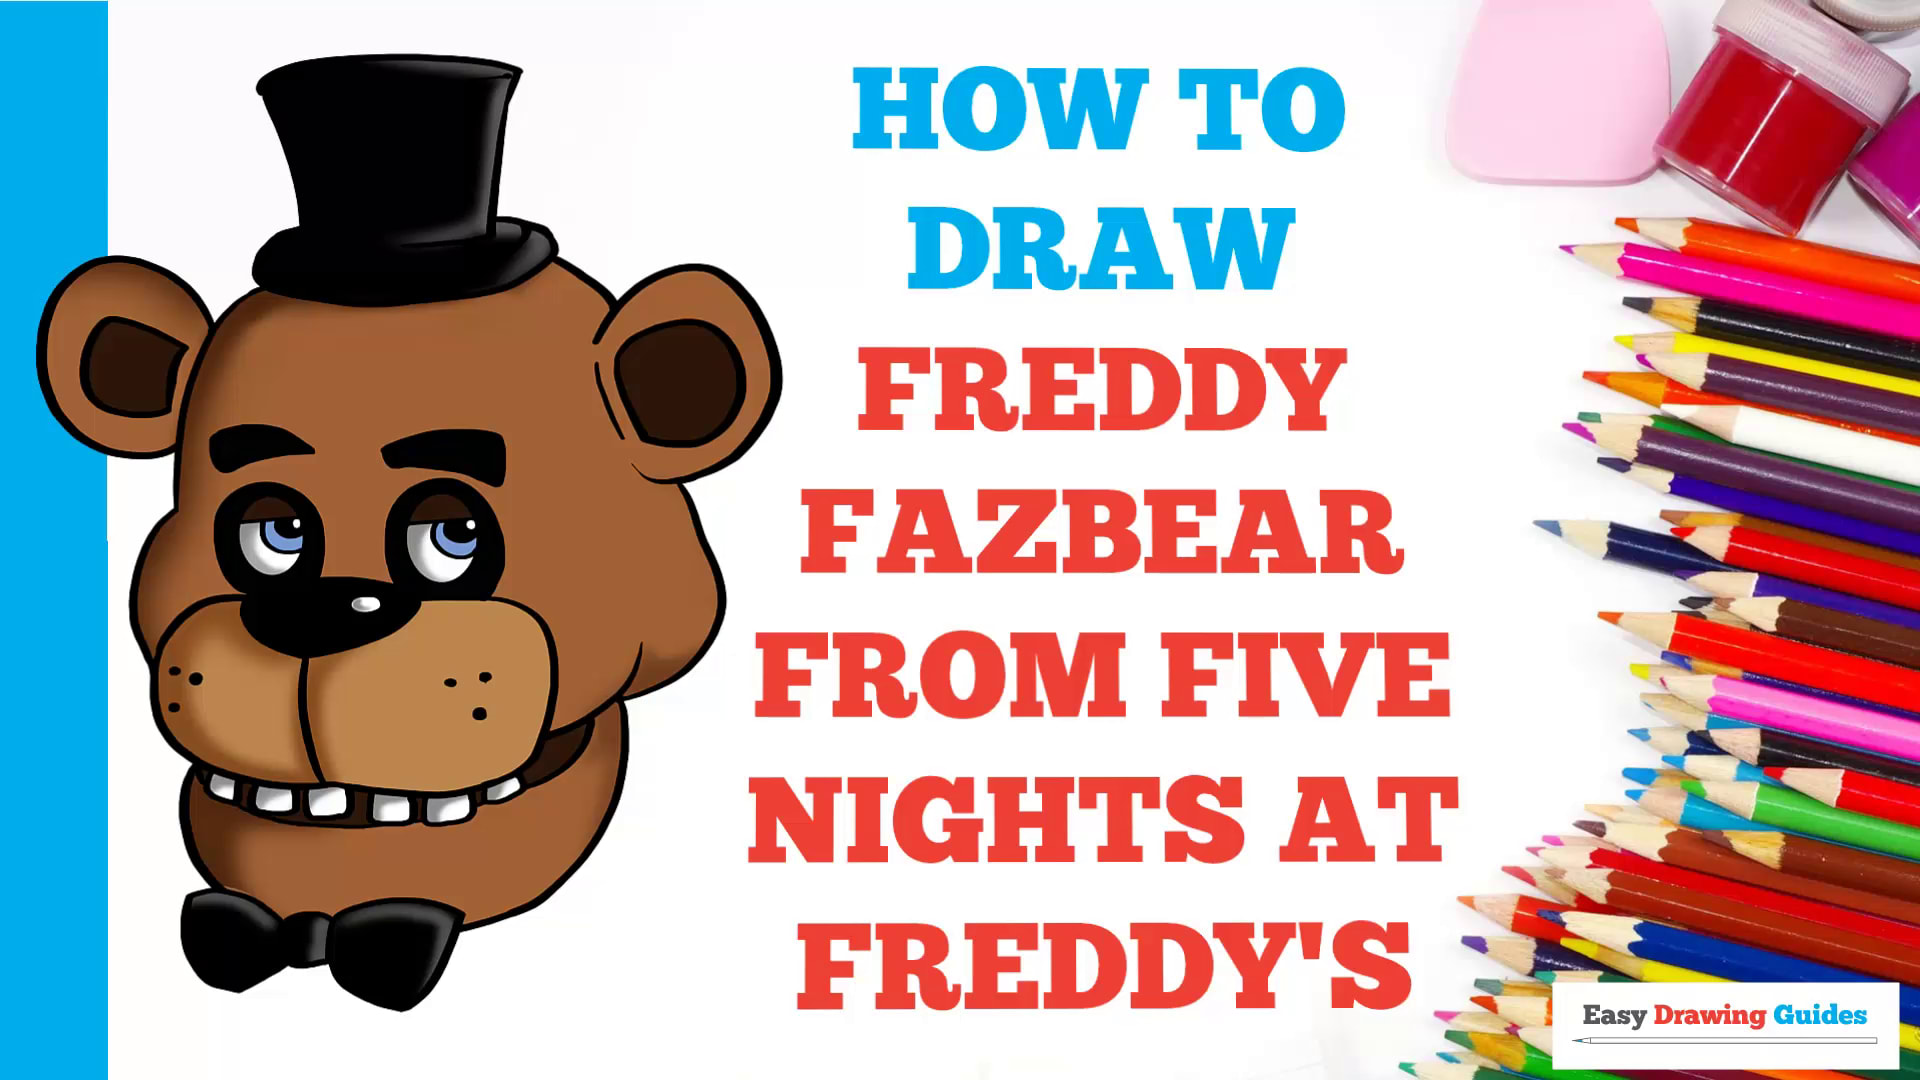 How to Draw Freddy Fazbear